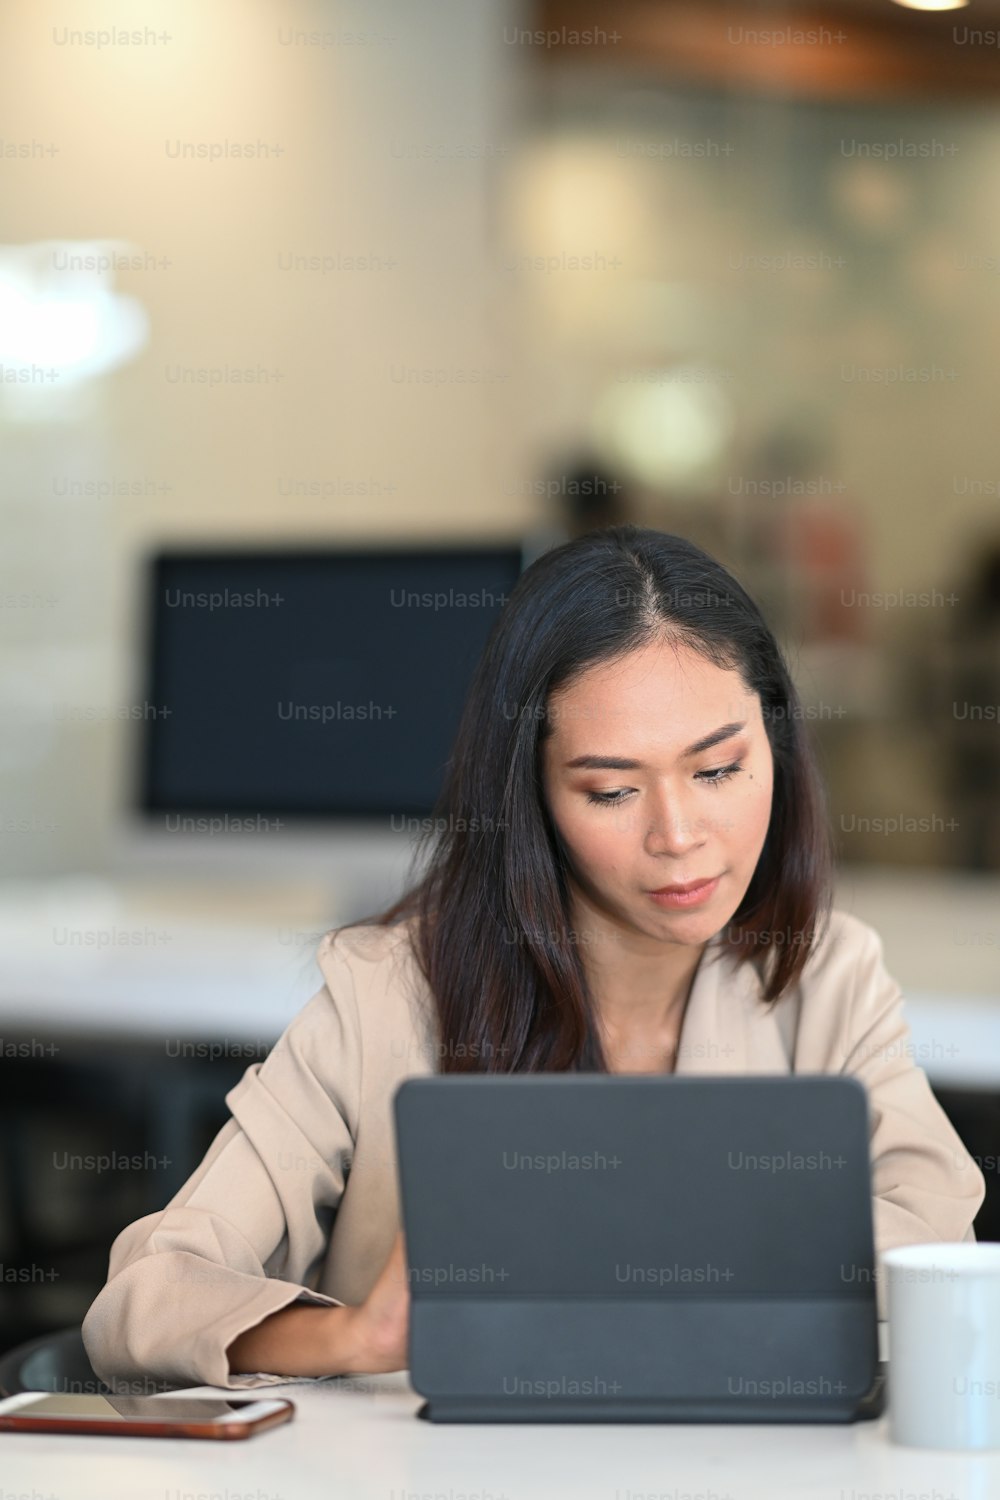 Ritratto di giovane donna che lavora su tablet e cerca informazioni in internet nella stanza dell'ufficio.